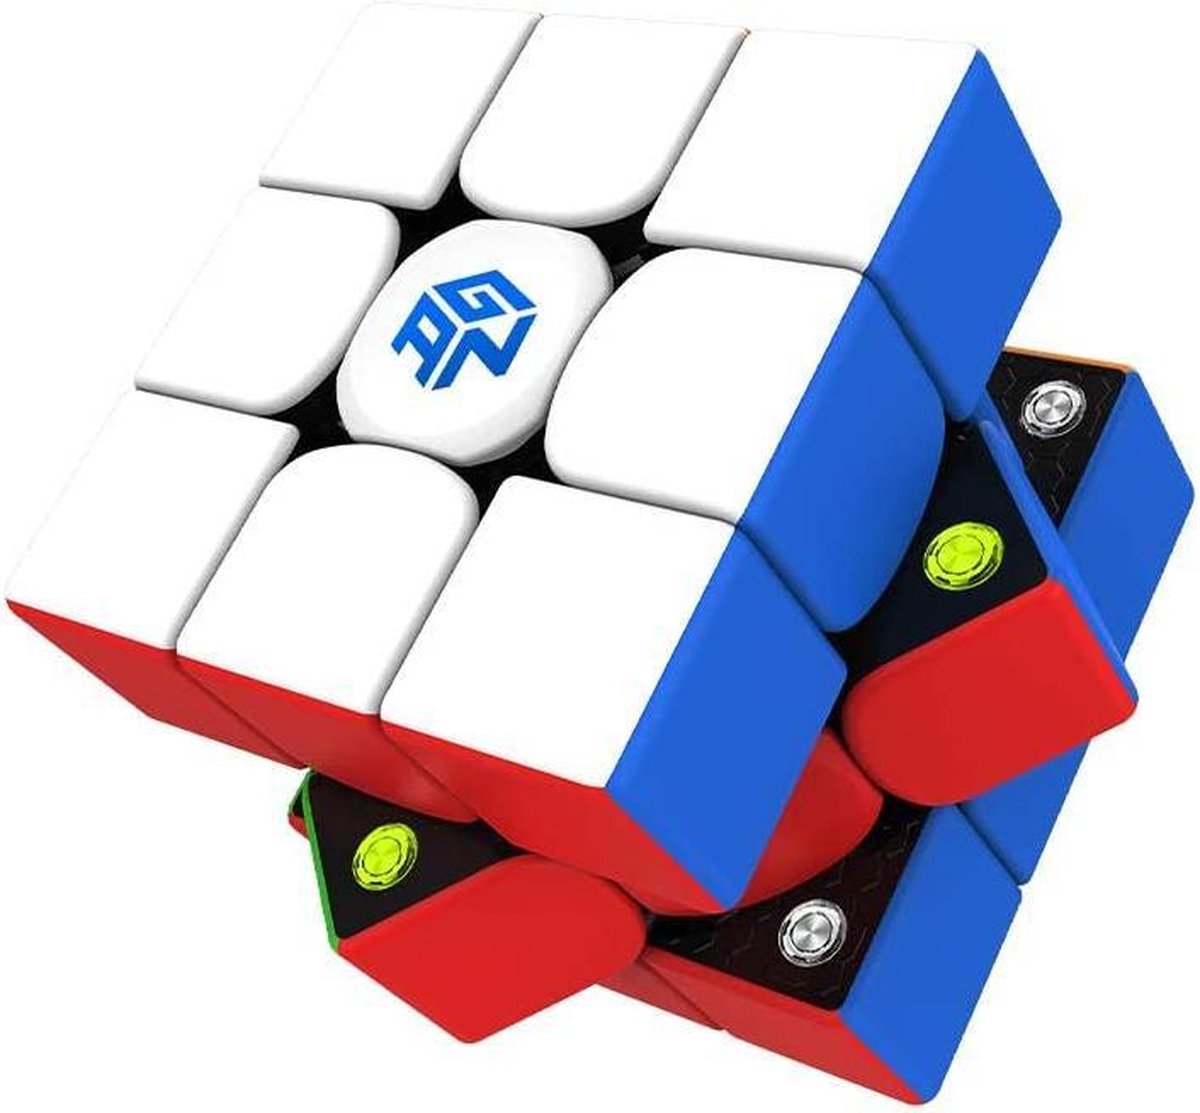 GAN 356 M Professionele Speed Cube - 3x3 - Magnetisch - Magic Puzzle - Puzzel Kubus - GAN